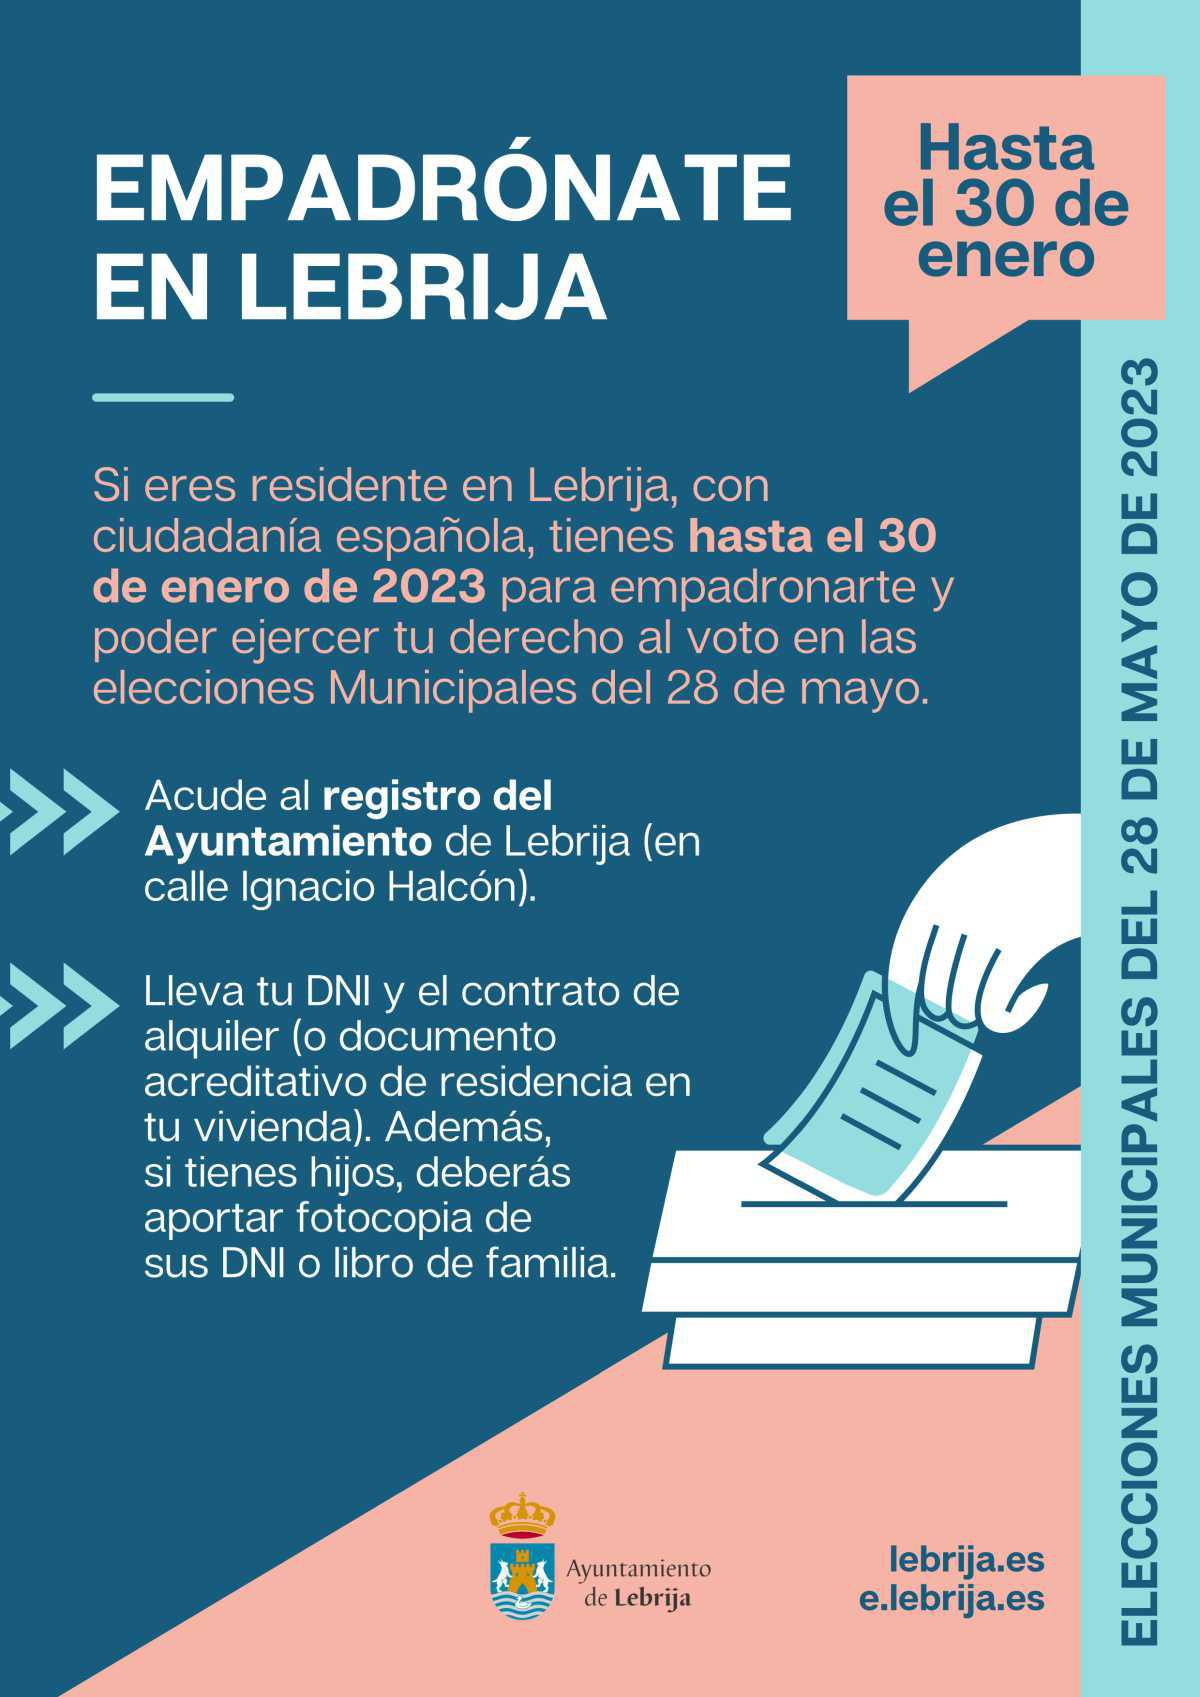 Los residentes en Lebrija con ciudadanía española deben empadronarse en la localidad para ejercer su derecho al voto en las próximas elecciones municipales